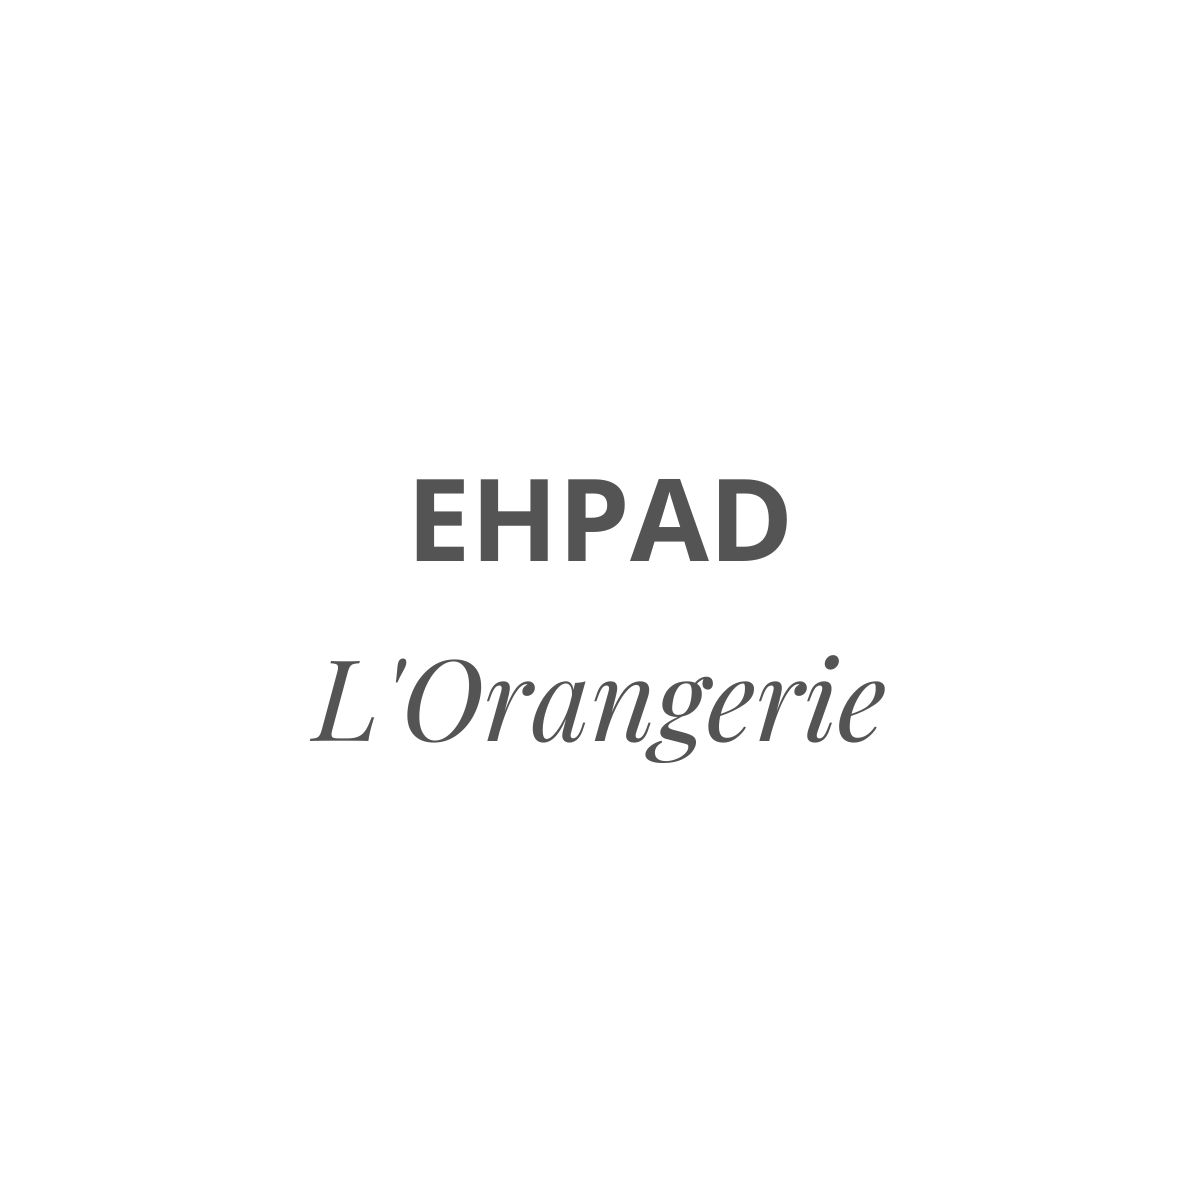 EHPAD (11)